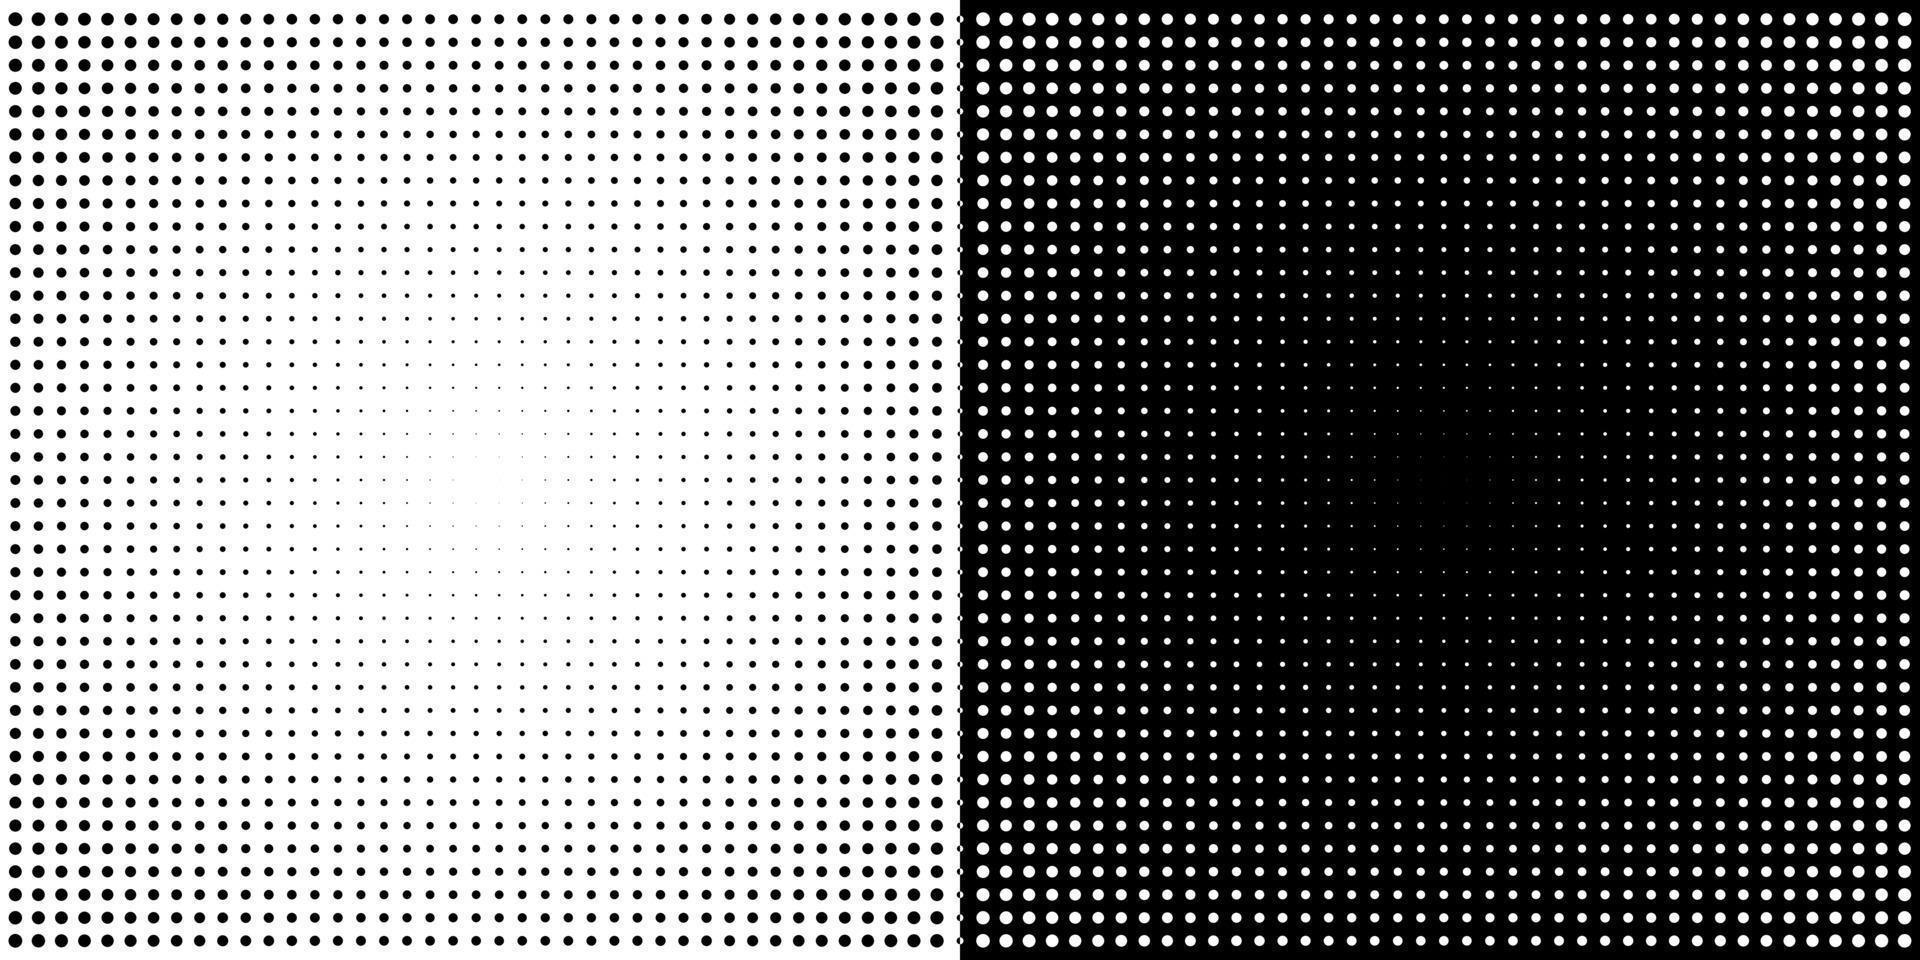 meio-tom circular. círculos pontilhados abstratos, gradiente de pontos geométricos de meios-tons redondos e textura pop art. conjunto de vetores de gradação de spray de ponto. gradiente de meio-tom de ilustração manchado, efeito redondo